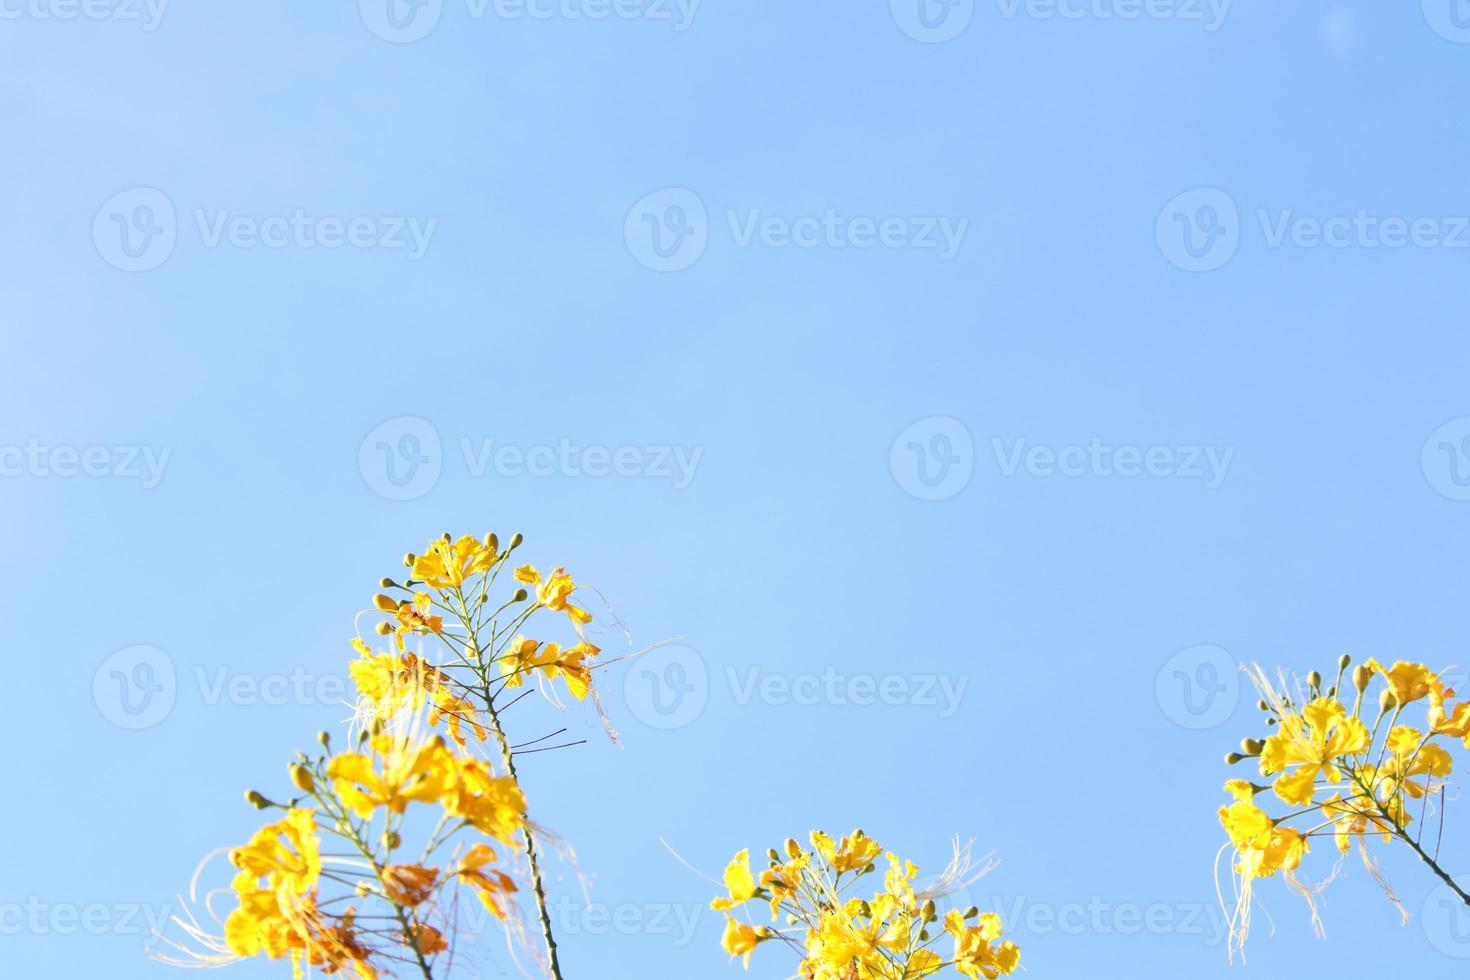 gele bloemen en knoppen van de vlamboom of koninklijke poinciana hieronder van frame en lichtblauwe hemelachtergrond, thailand. foto